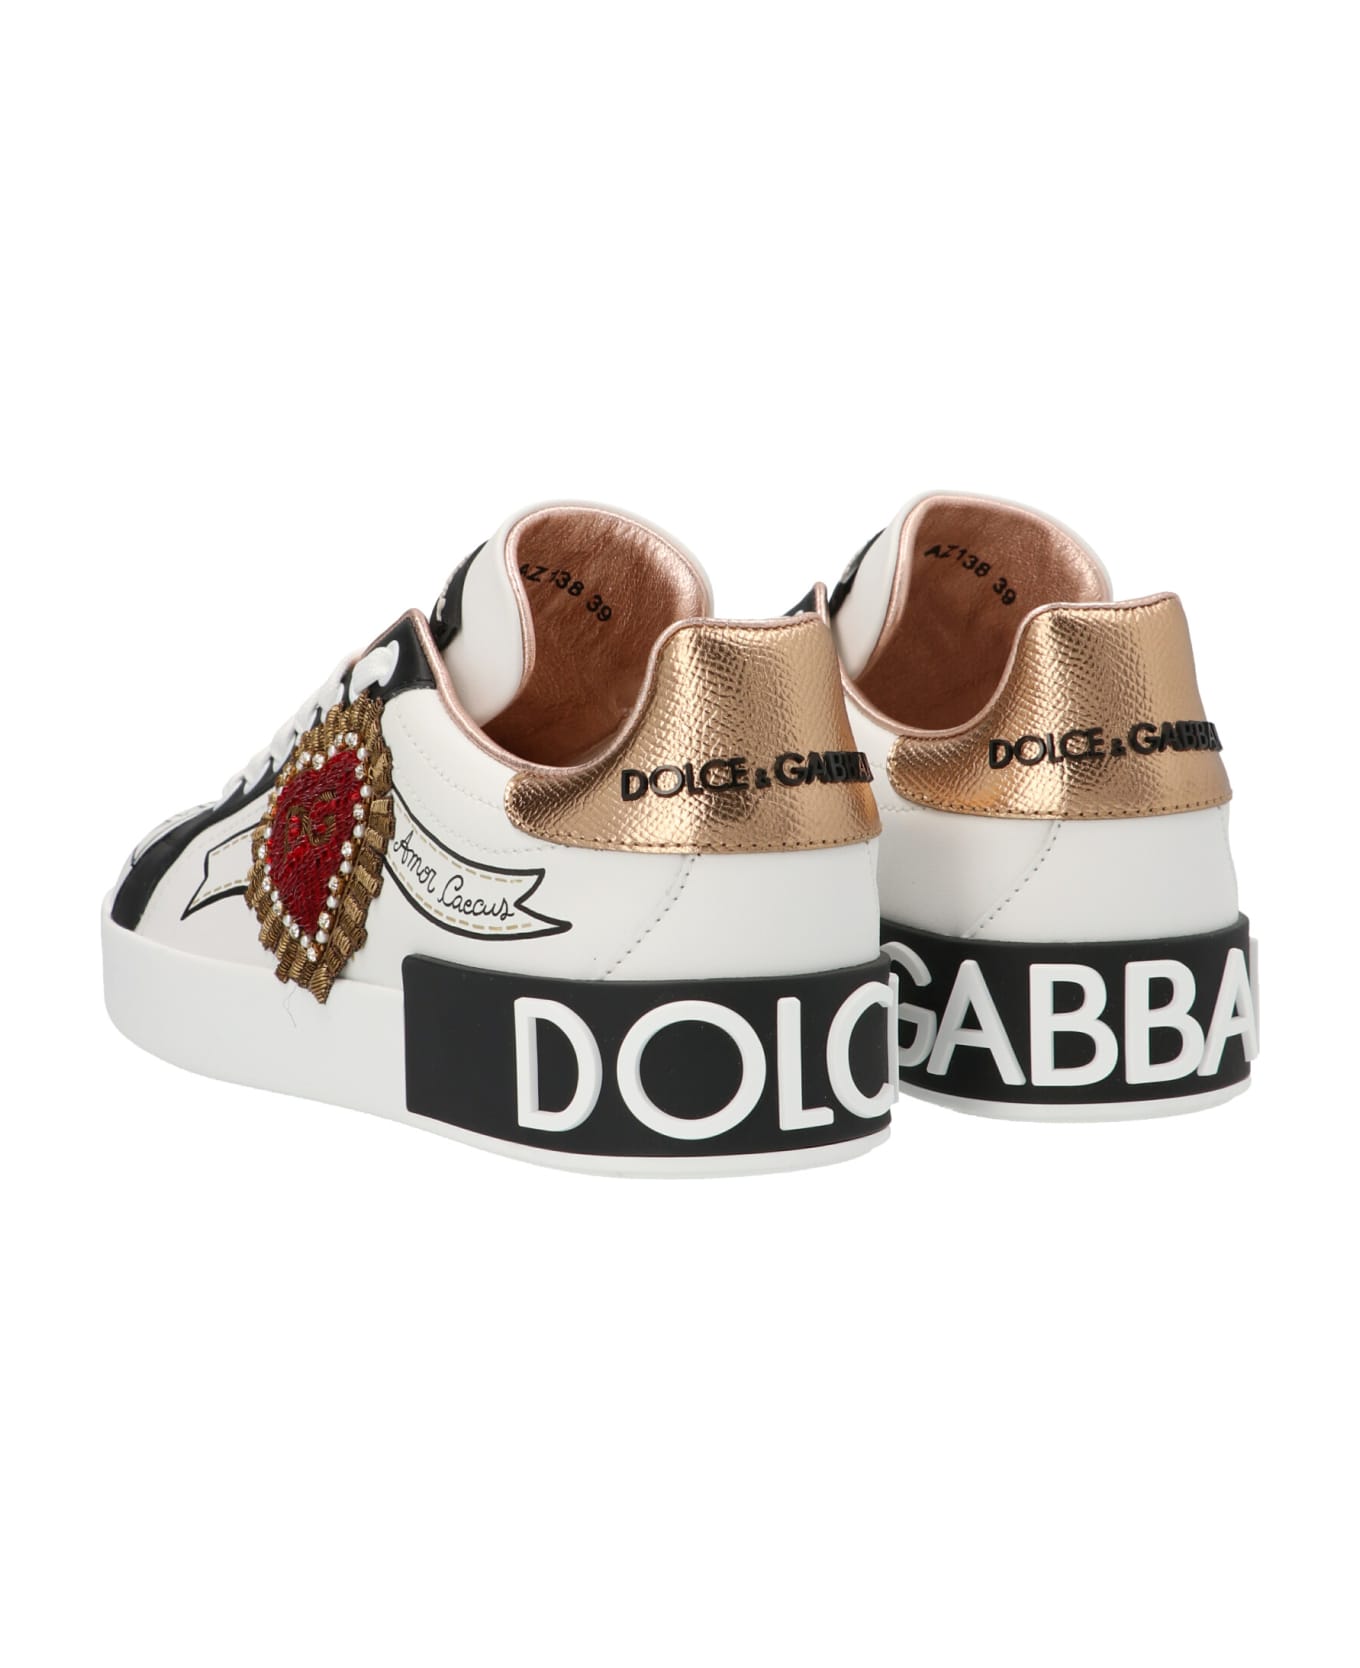 Dolce & Gabbana 'portofino' Sneakers - Multicolor